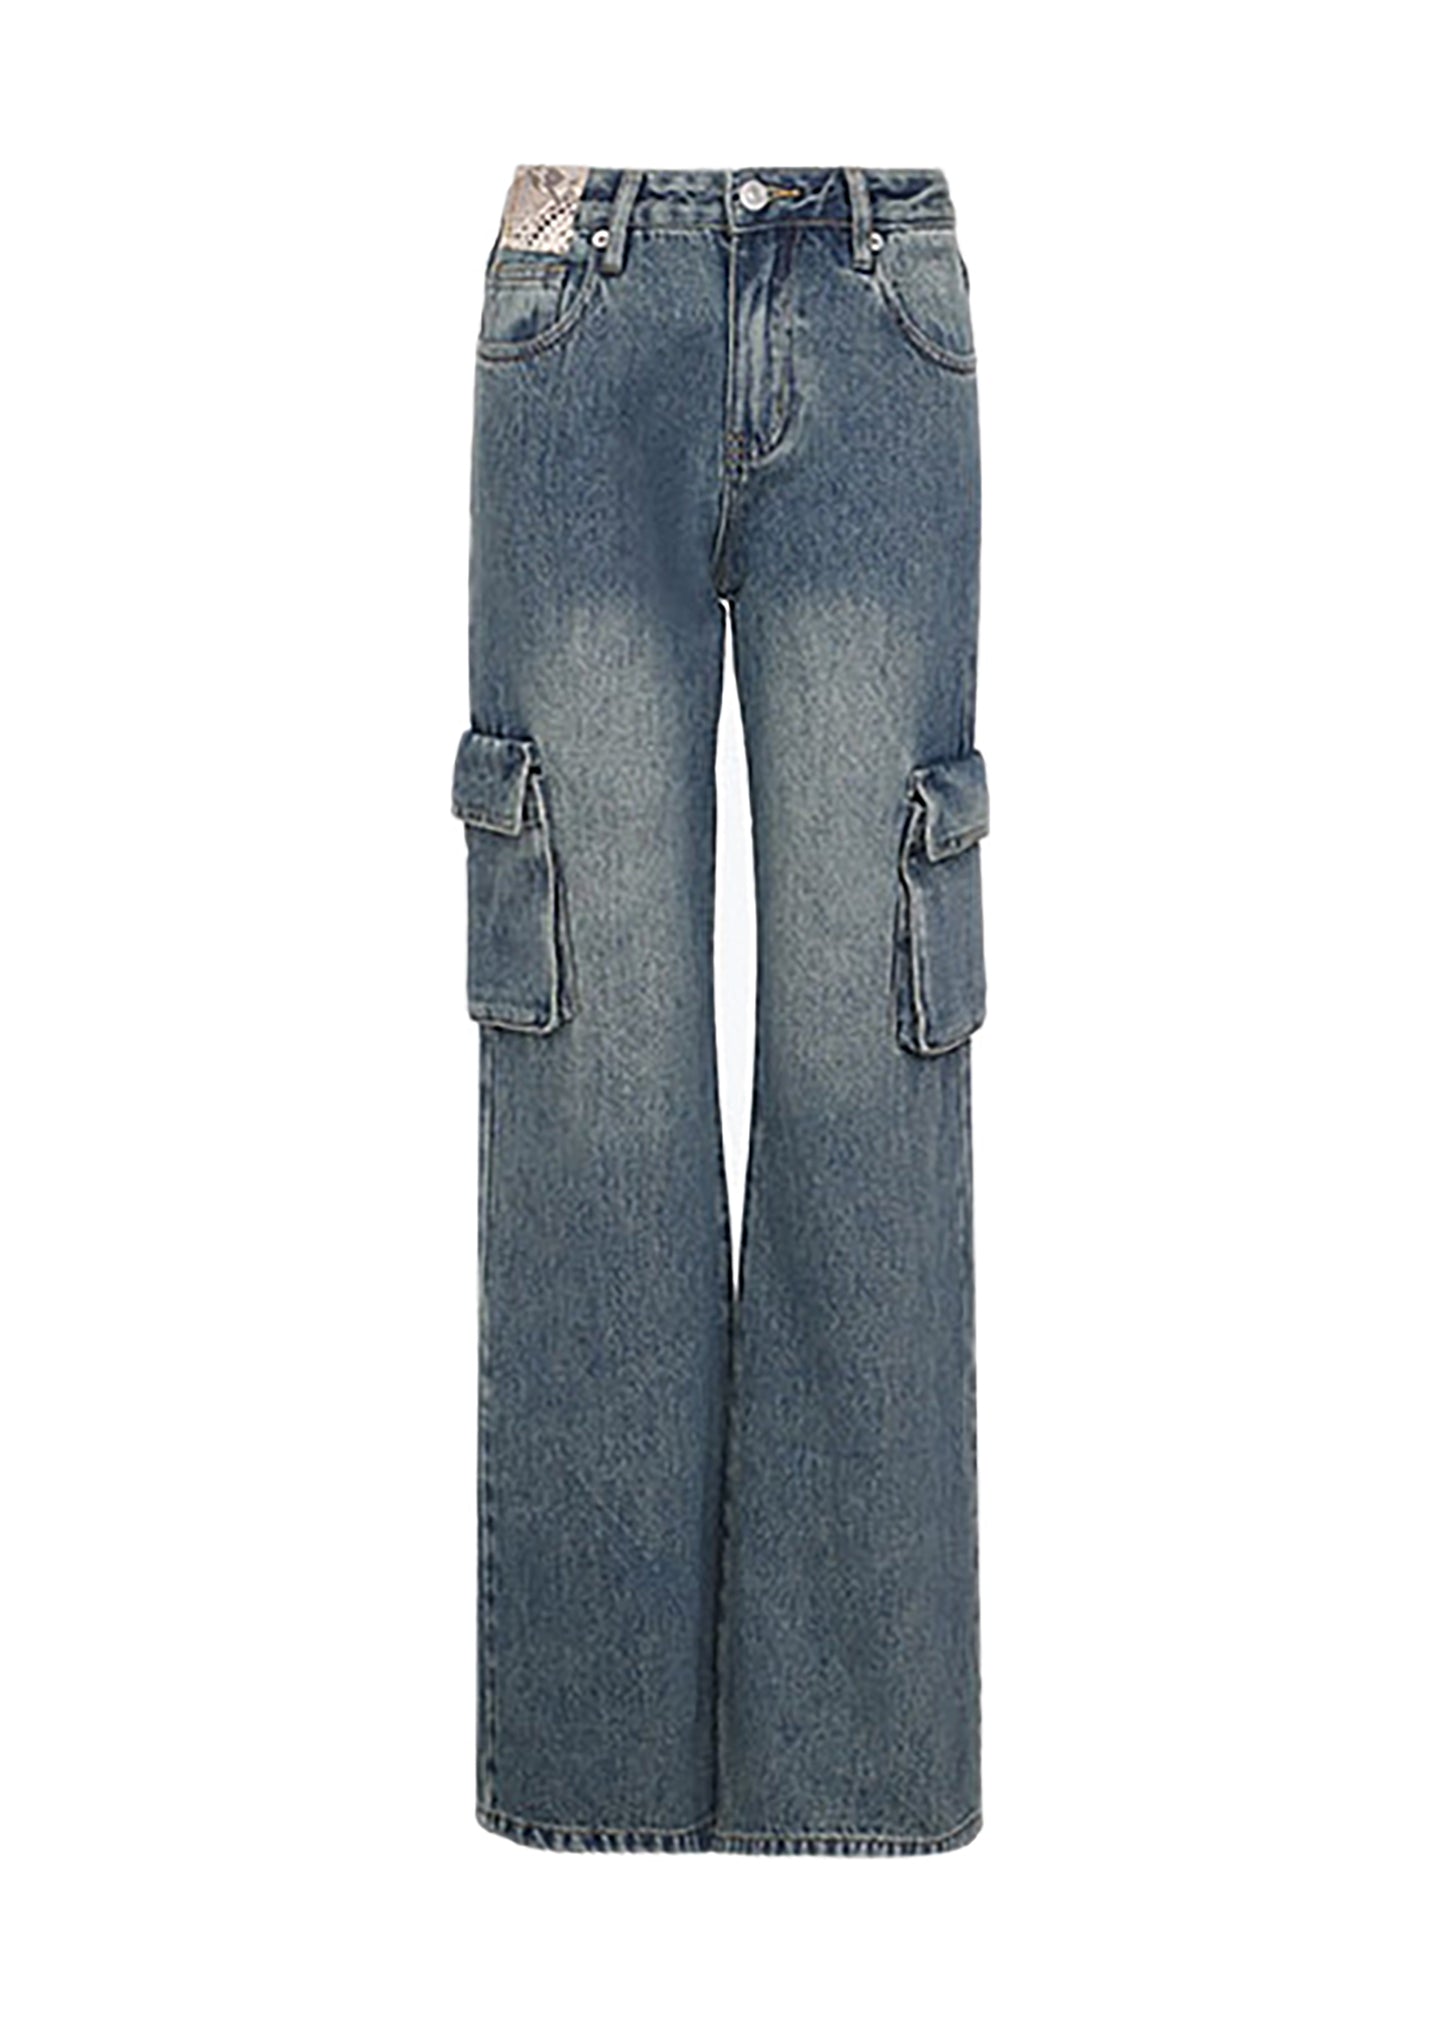 Vintage Multi-Pocket Cargo Jeans